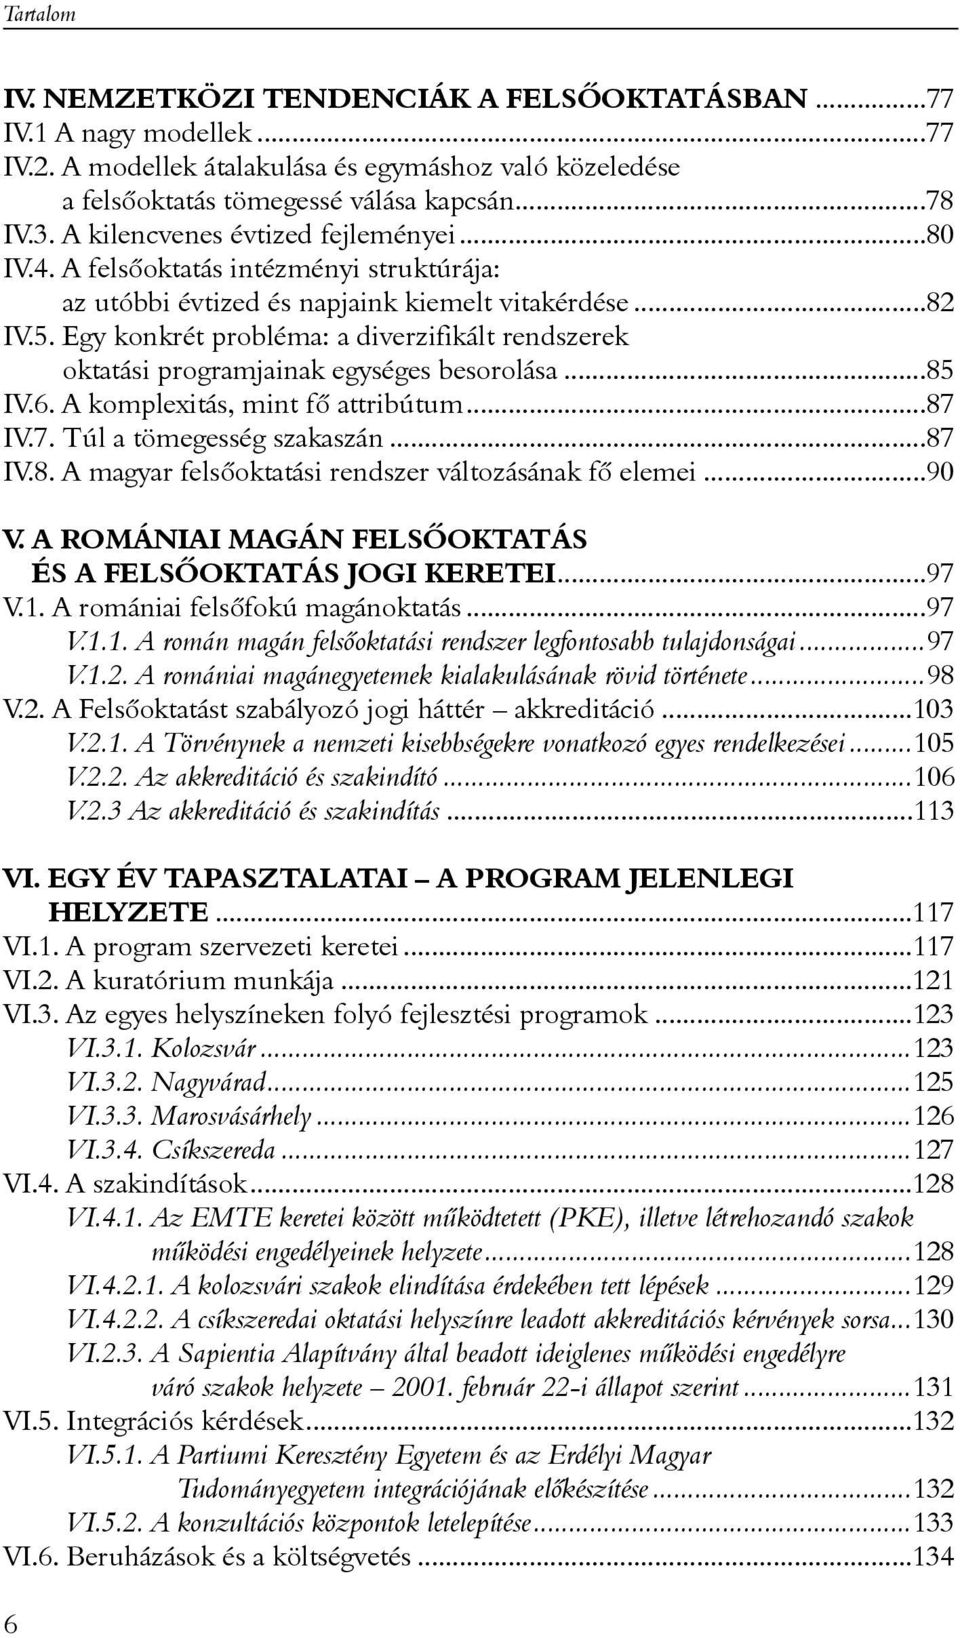 Egy konkrét probléma: a diverzifikált rendszerek oktatási programjainak egységes besorolása...85 IV.6. A komplexitás, mint fõ attribútum...87 IV.7. Túl a tömegesség szakaszán...87 IV.8. A magyar felsõoktatási rendszer változásának fõ elemei.